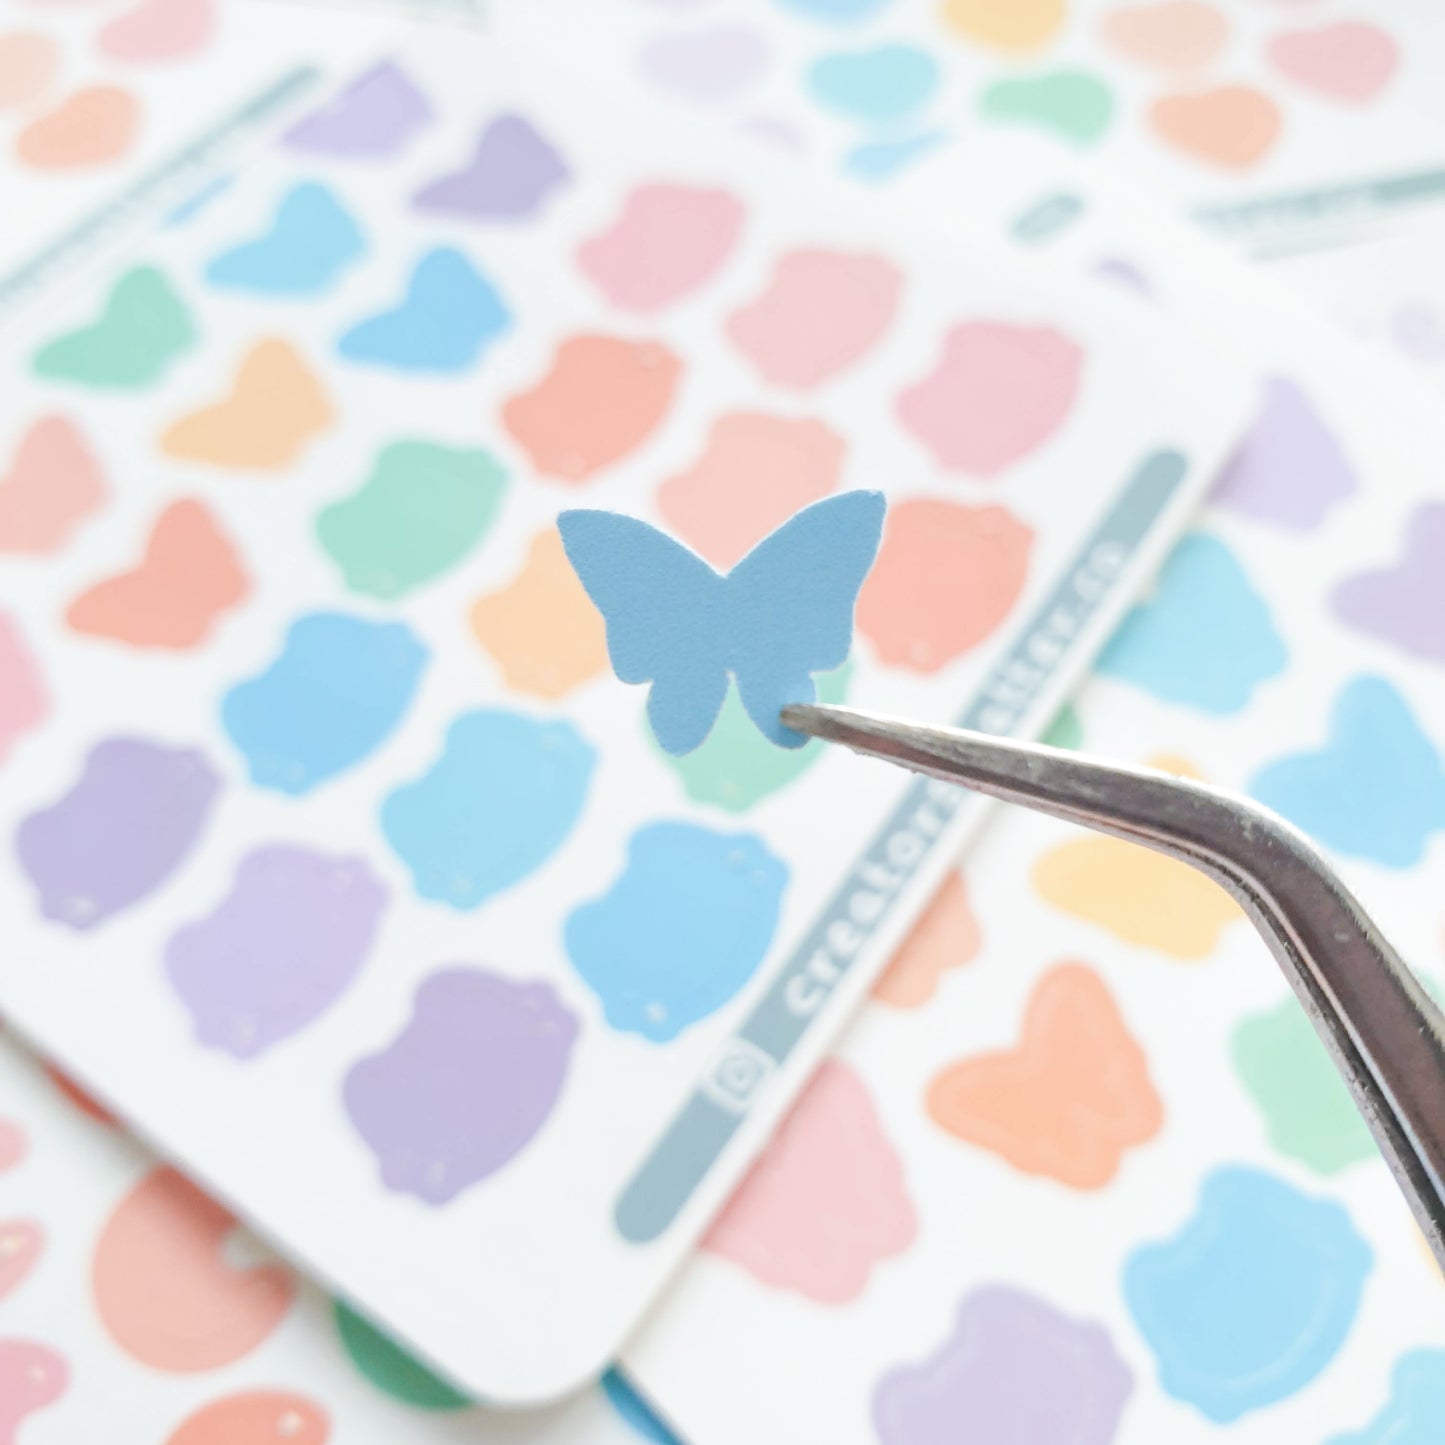 Silhouette (Butterflies & Cats) Sticker Sheet